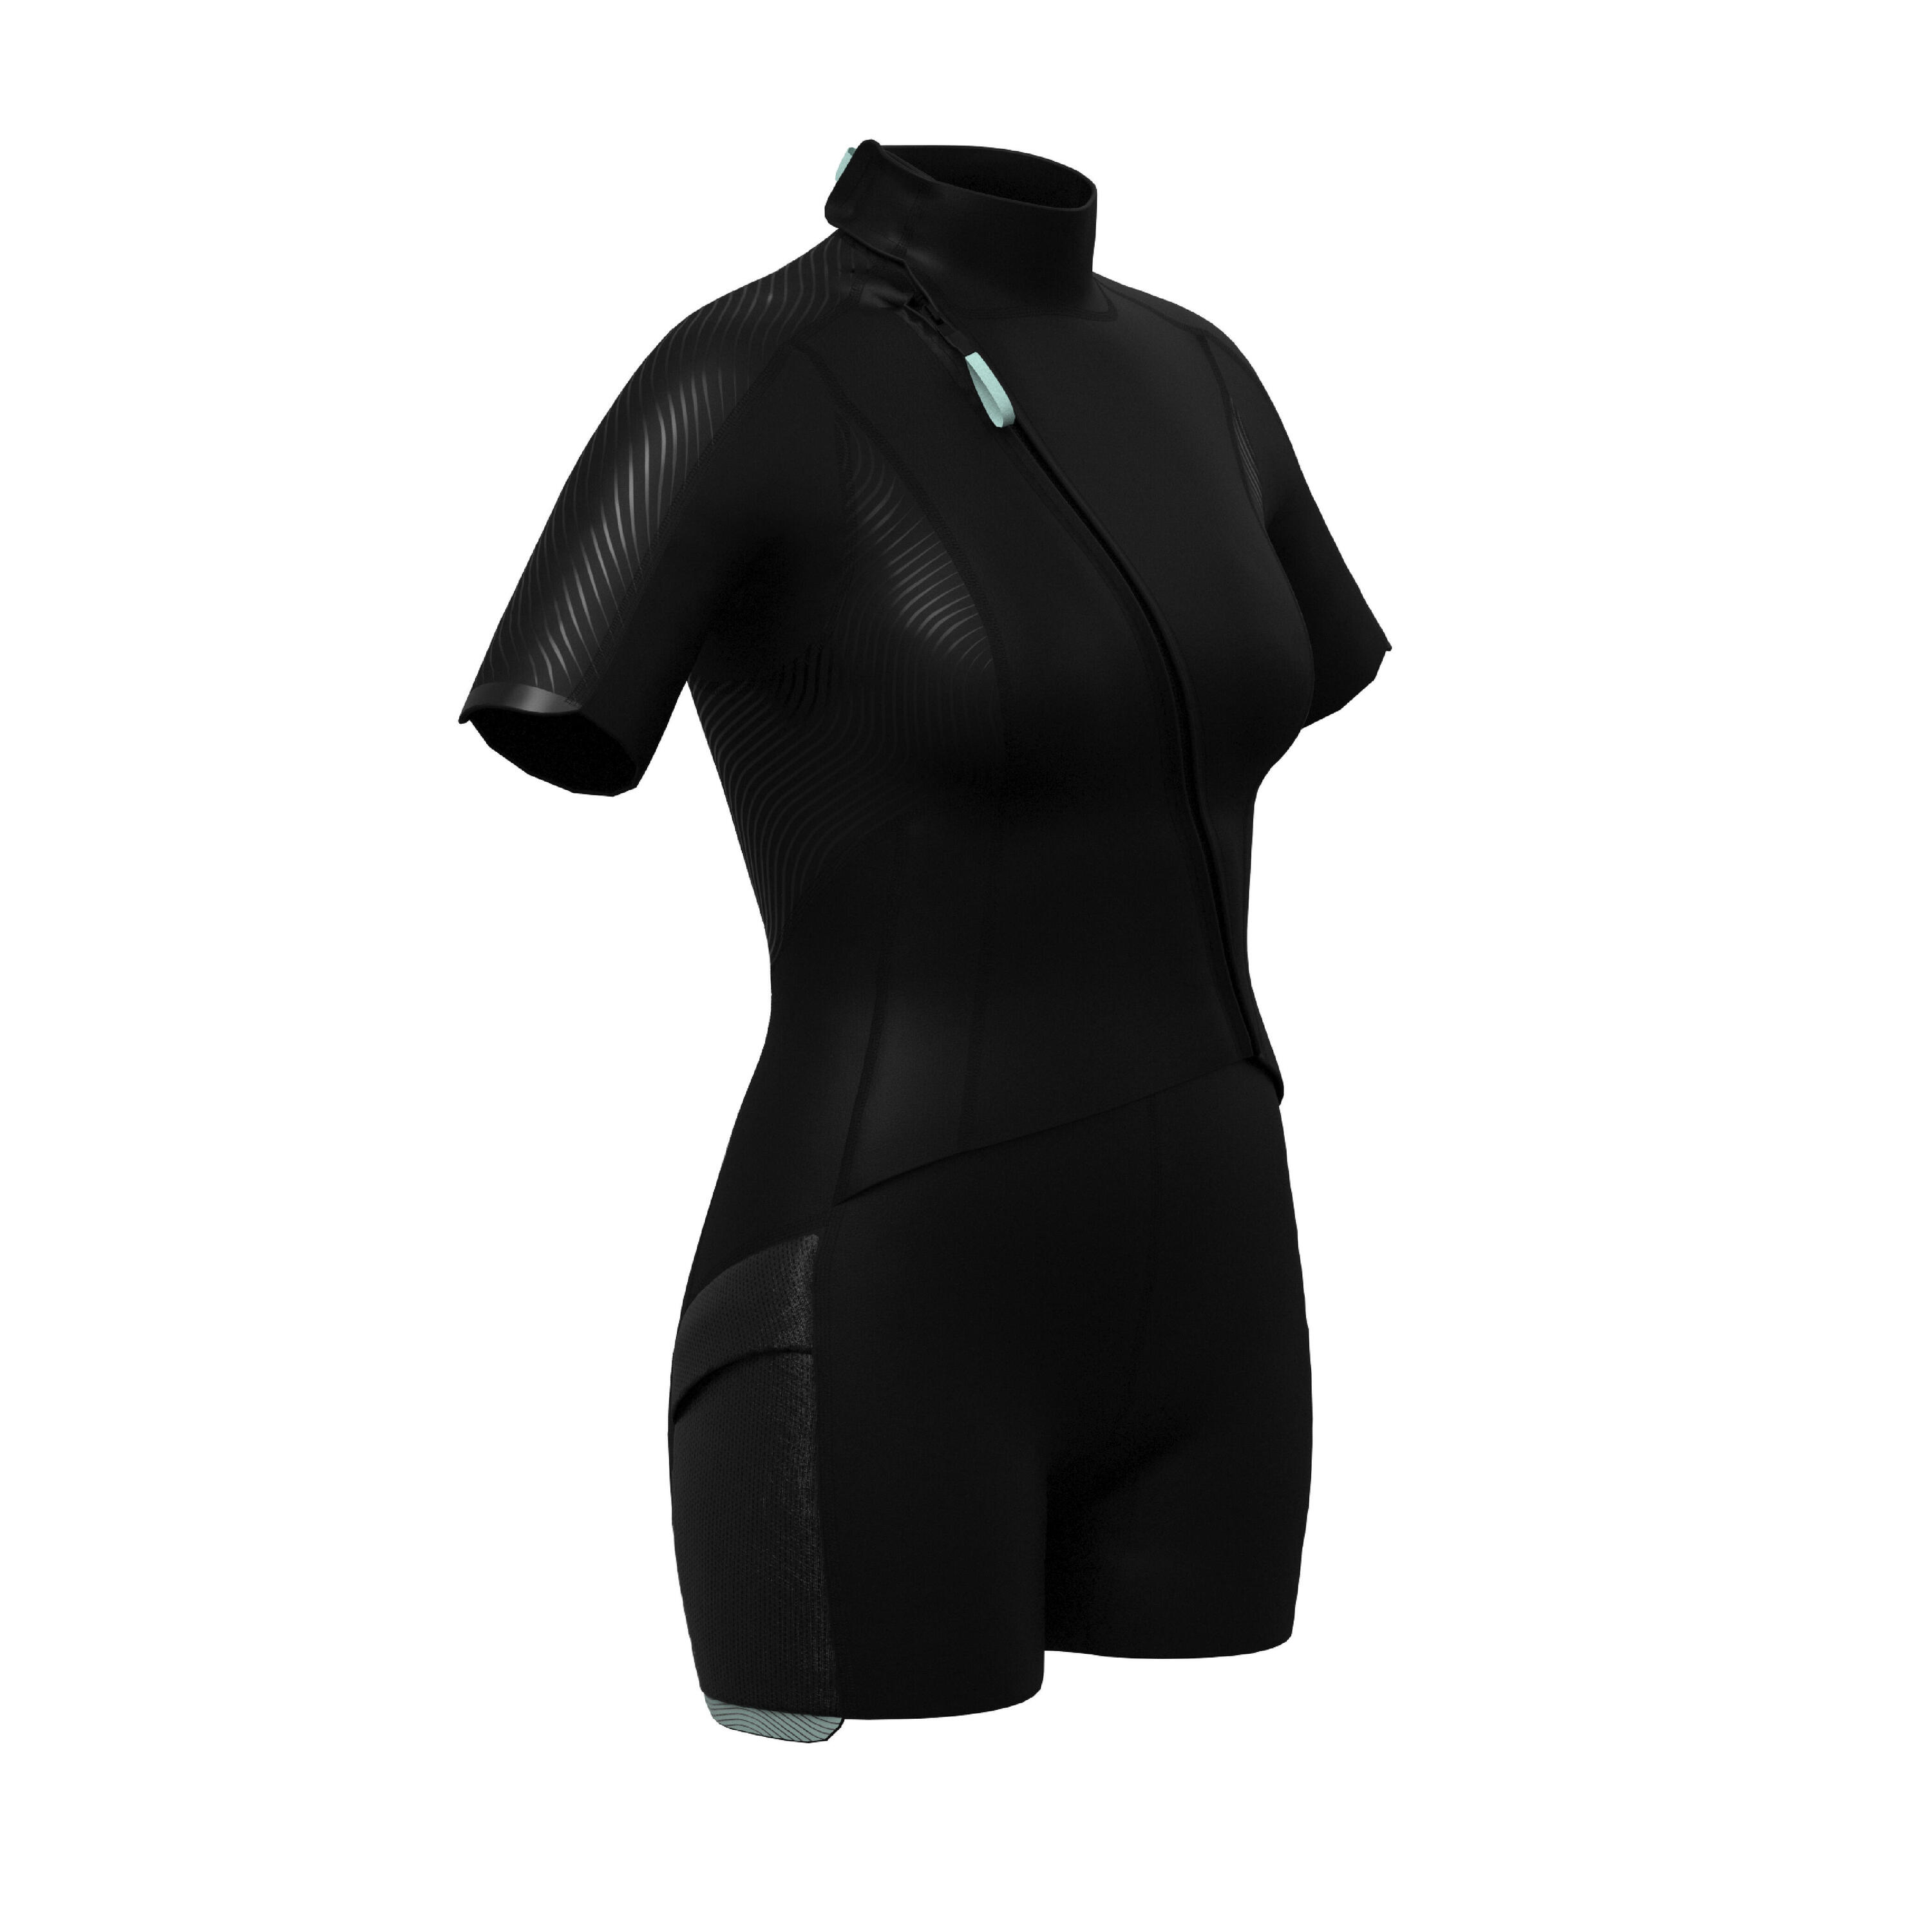 Women's 2 mm neoprene shorty wetsuit with diagonal front zip Easy 13/13